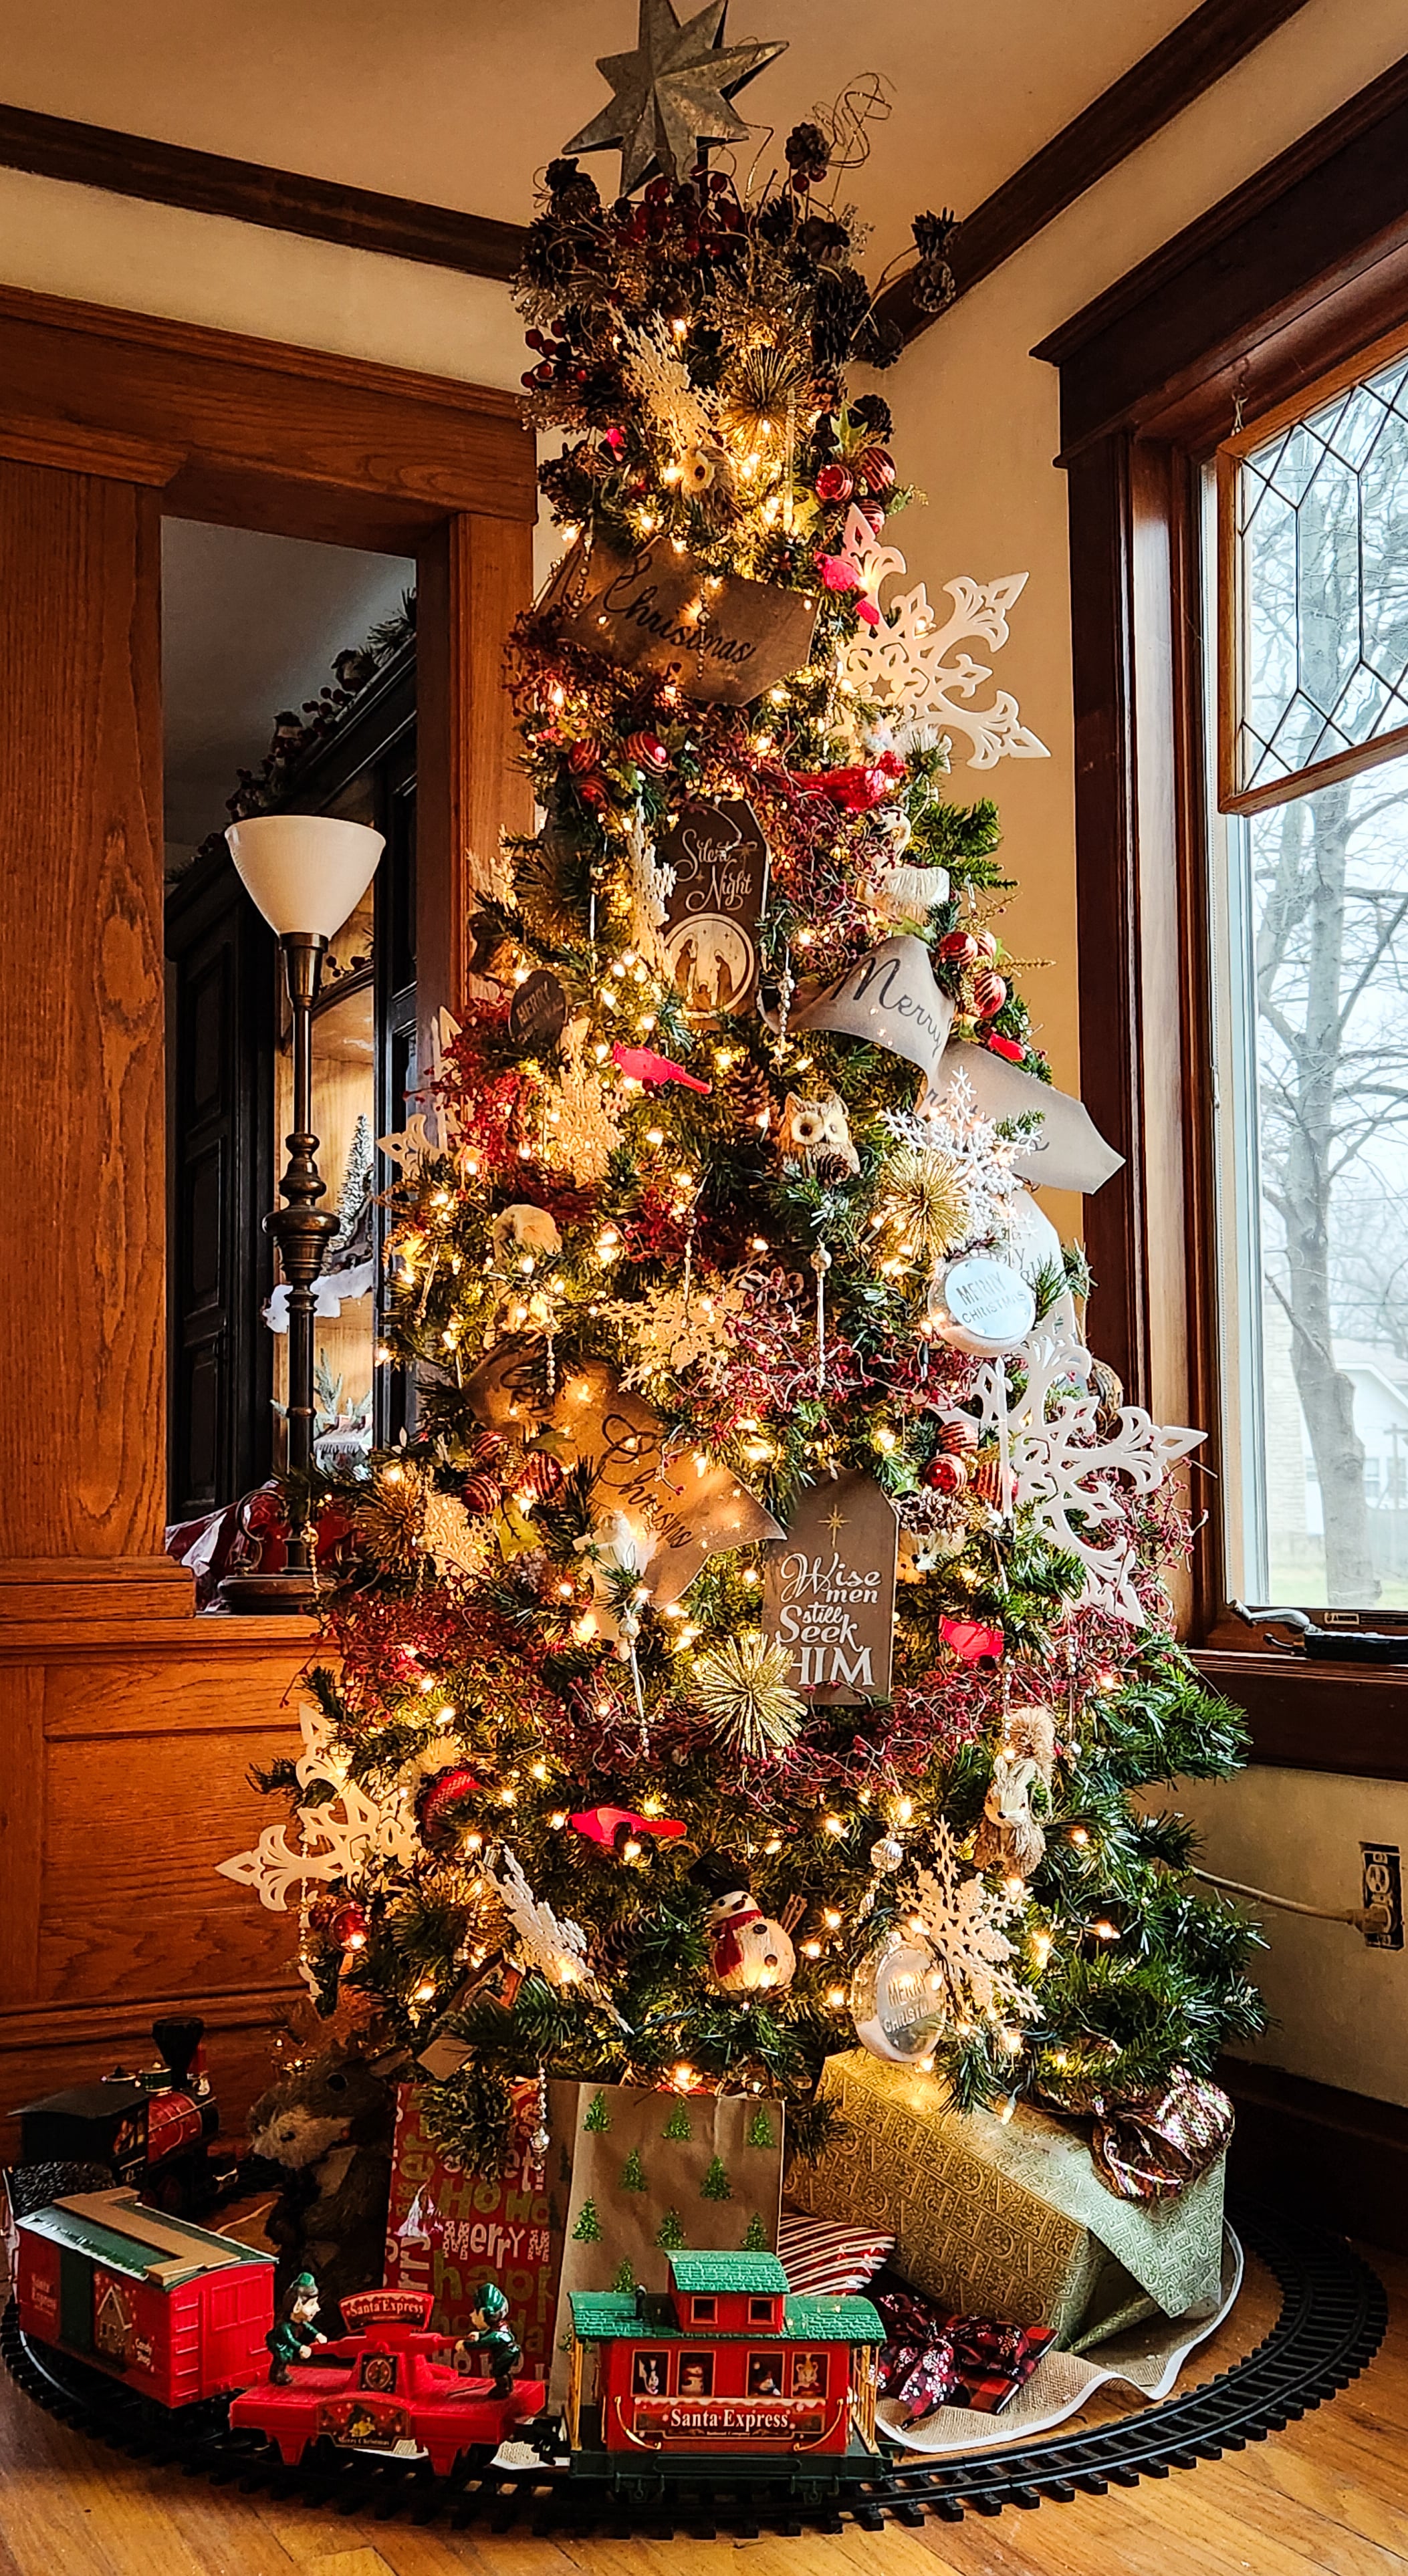 Missouri Christmas - magical Christmas tree